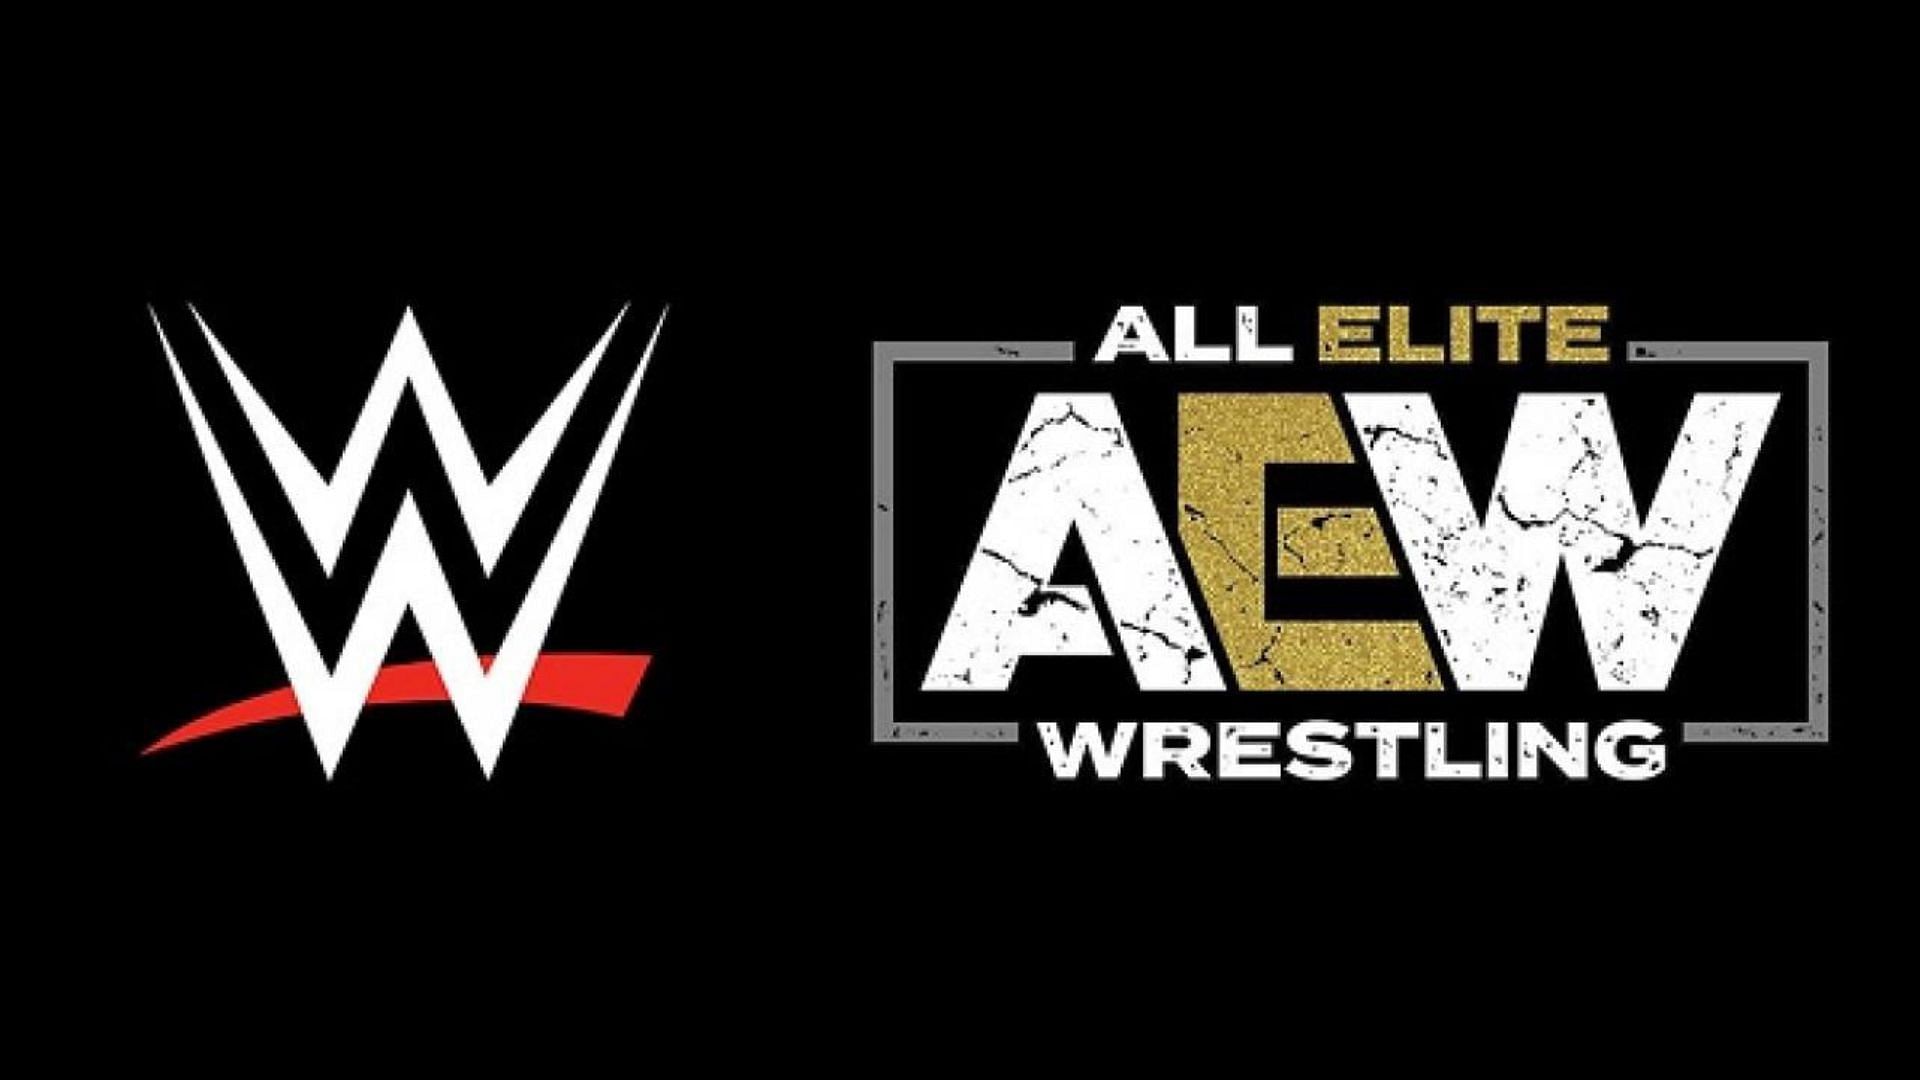 AEW is WWE